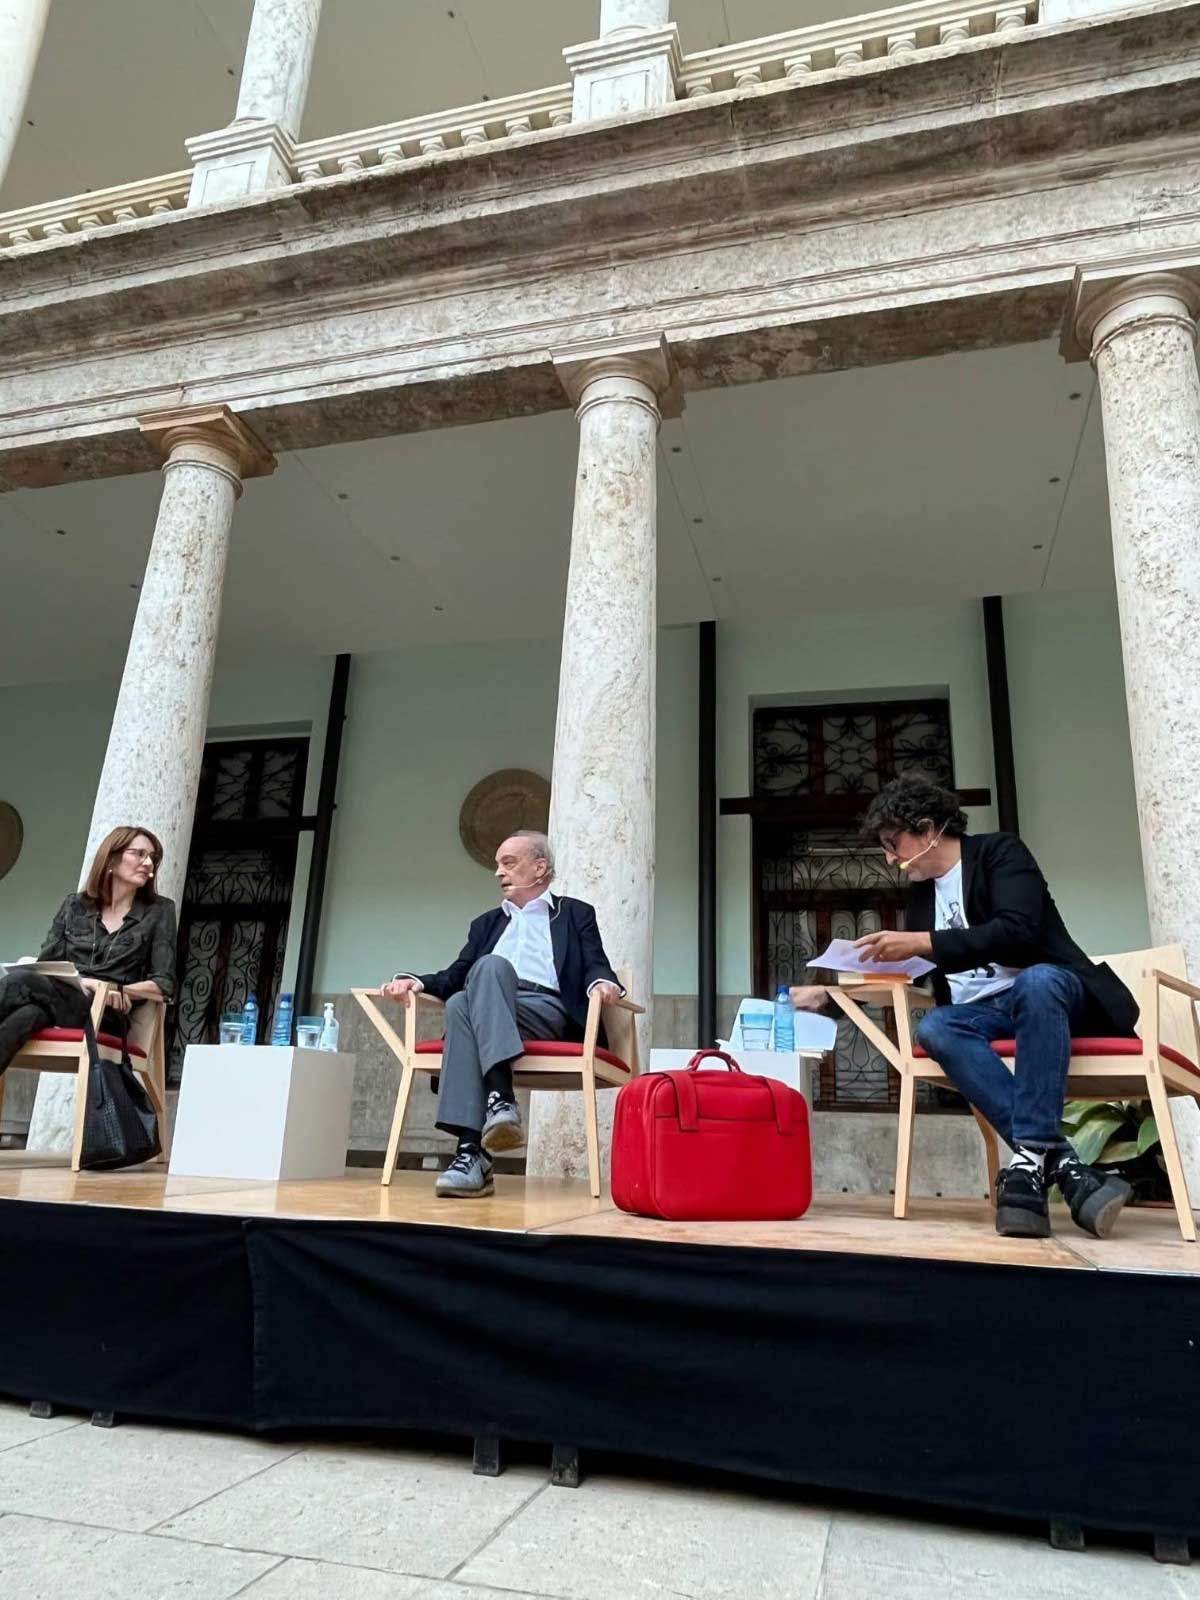 Montevideo en la Universidad de Valencia. Presenta García Cívico con maleta roja